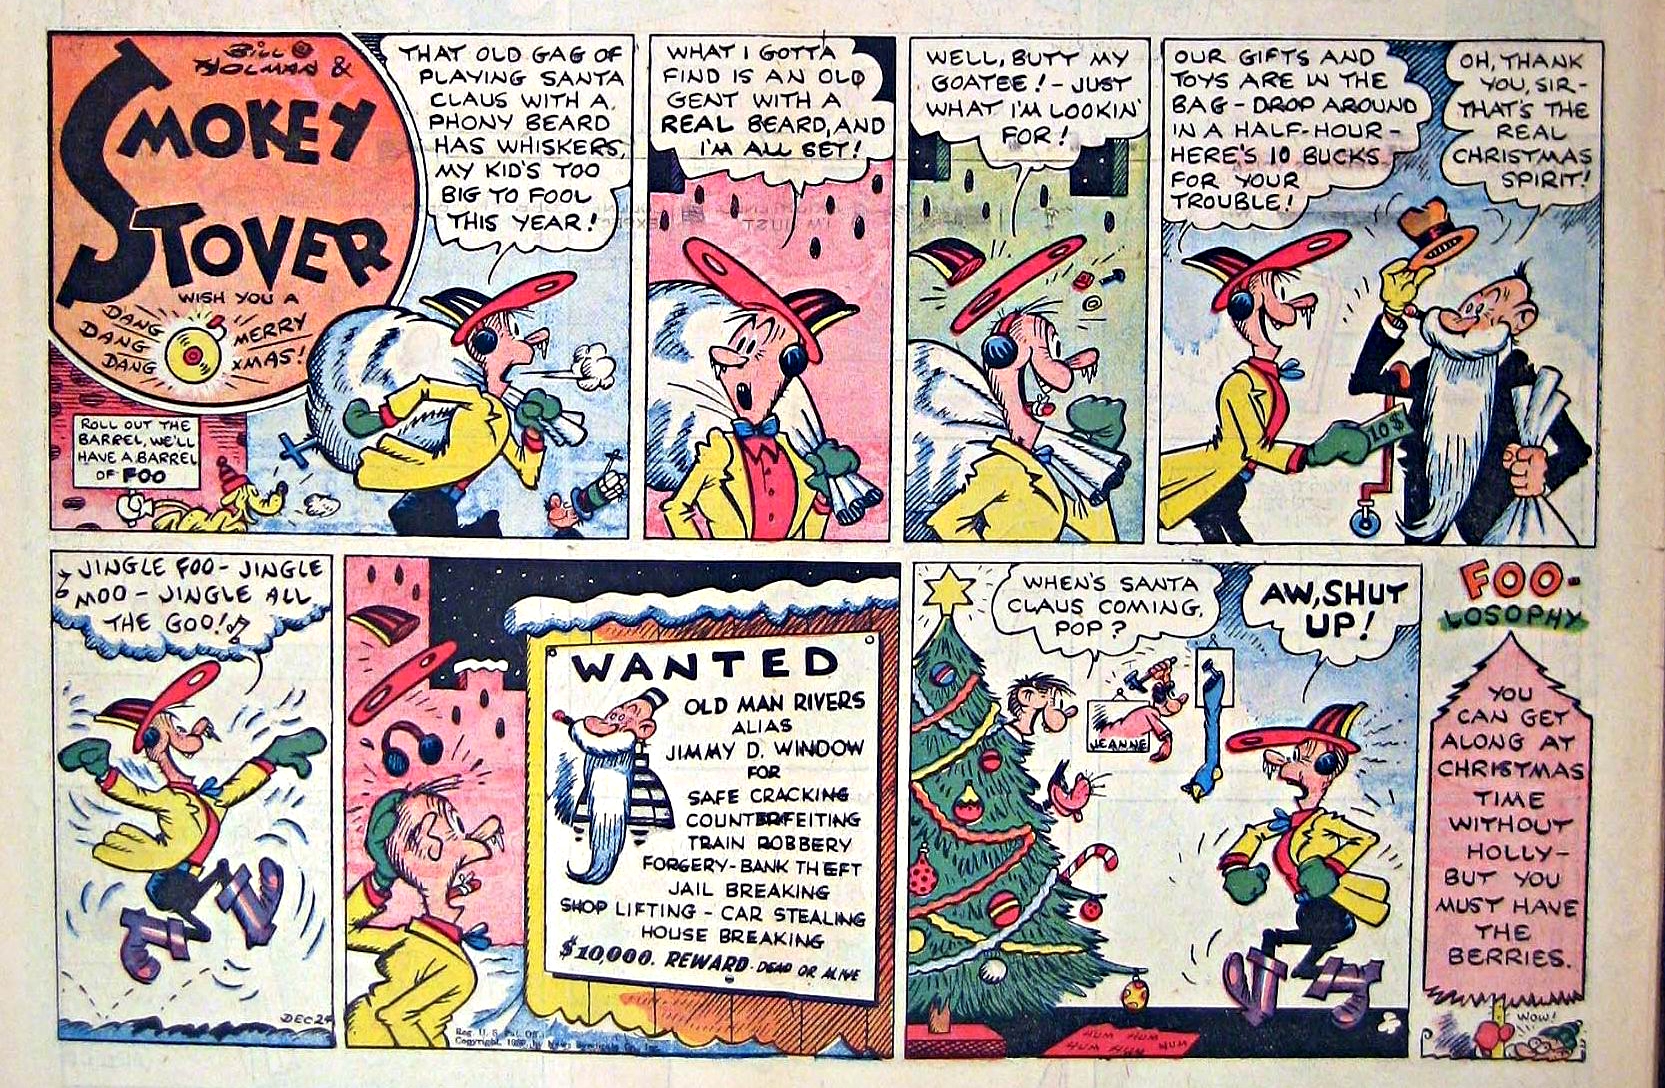 Smokey Stover, December 24, 1939